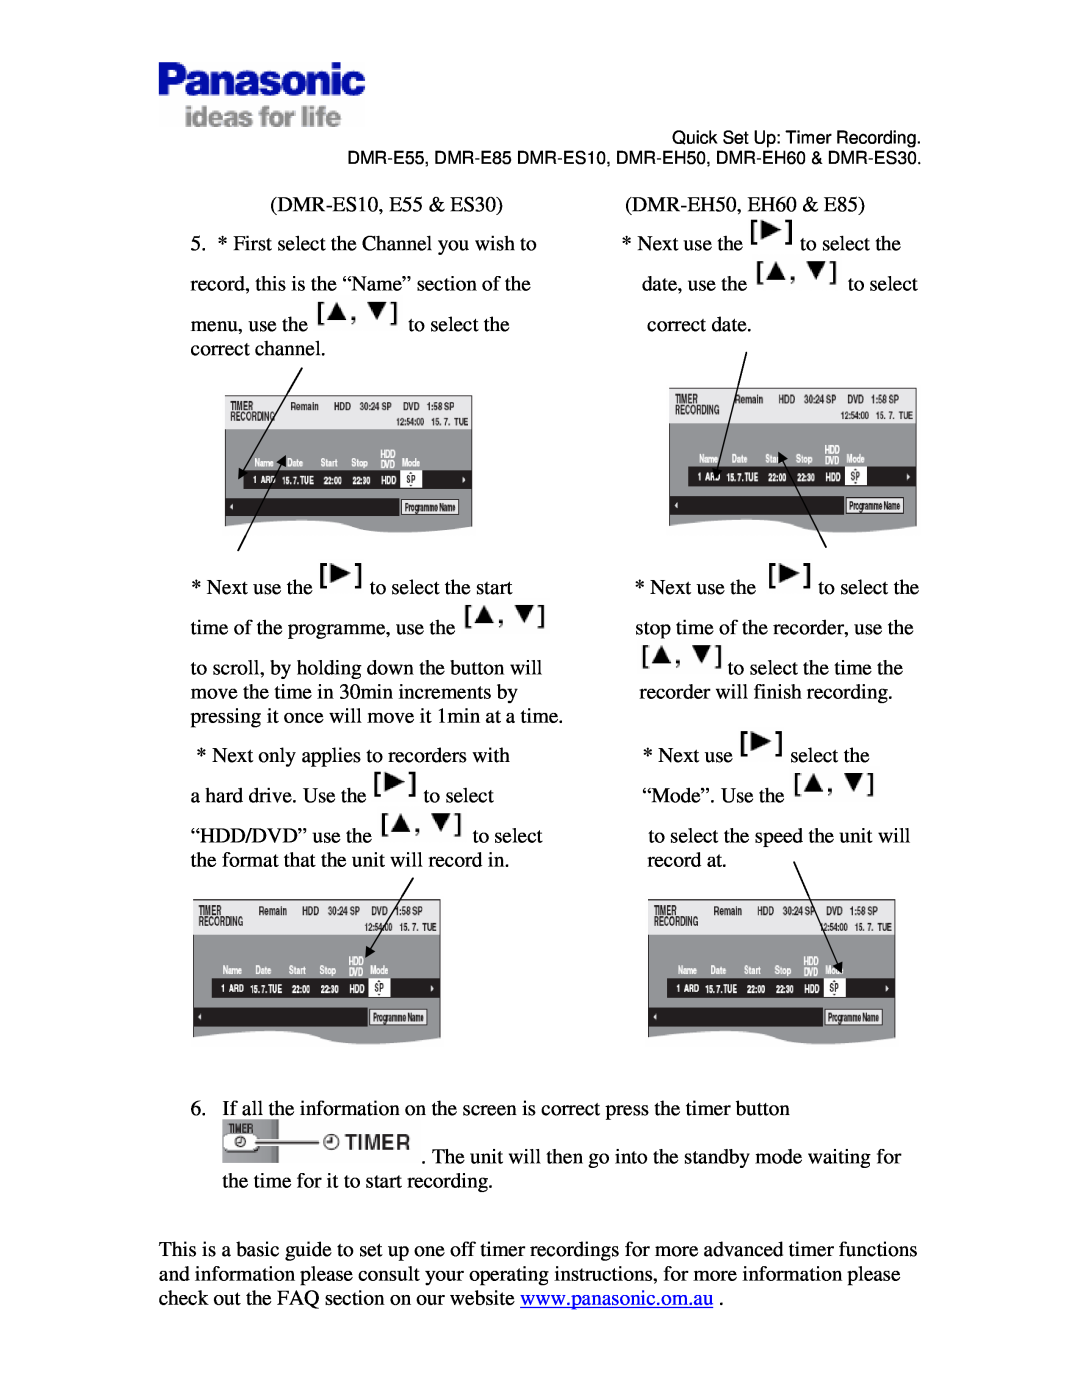 Panasonic DMR-ES30, DMR-EX88, DMR-E85 manual DMR-ES10, E55 & ES30 